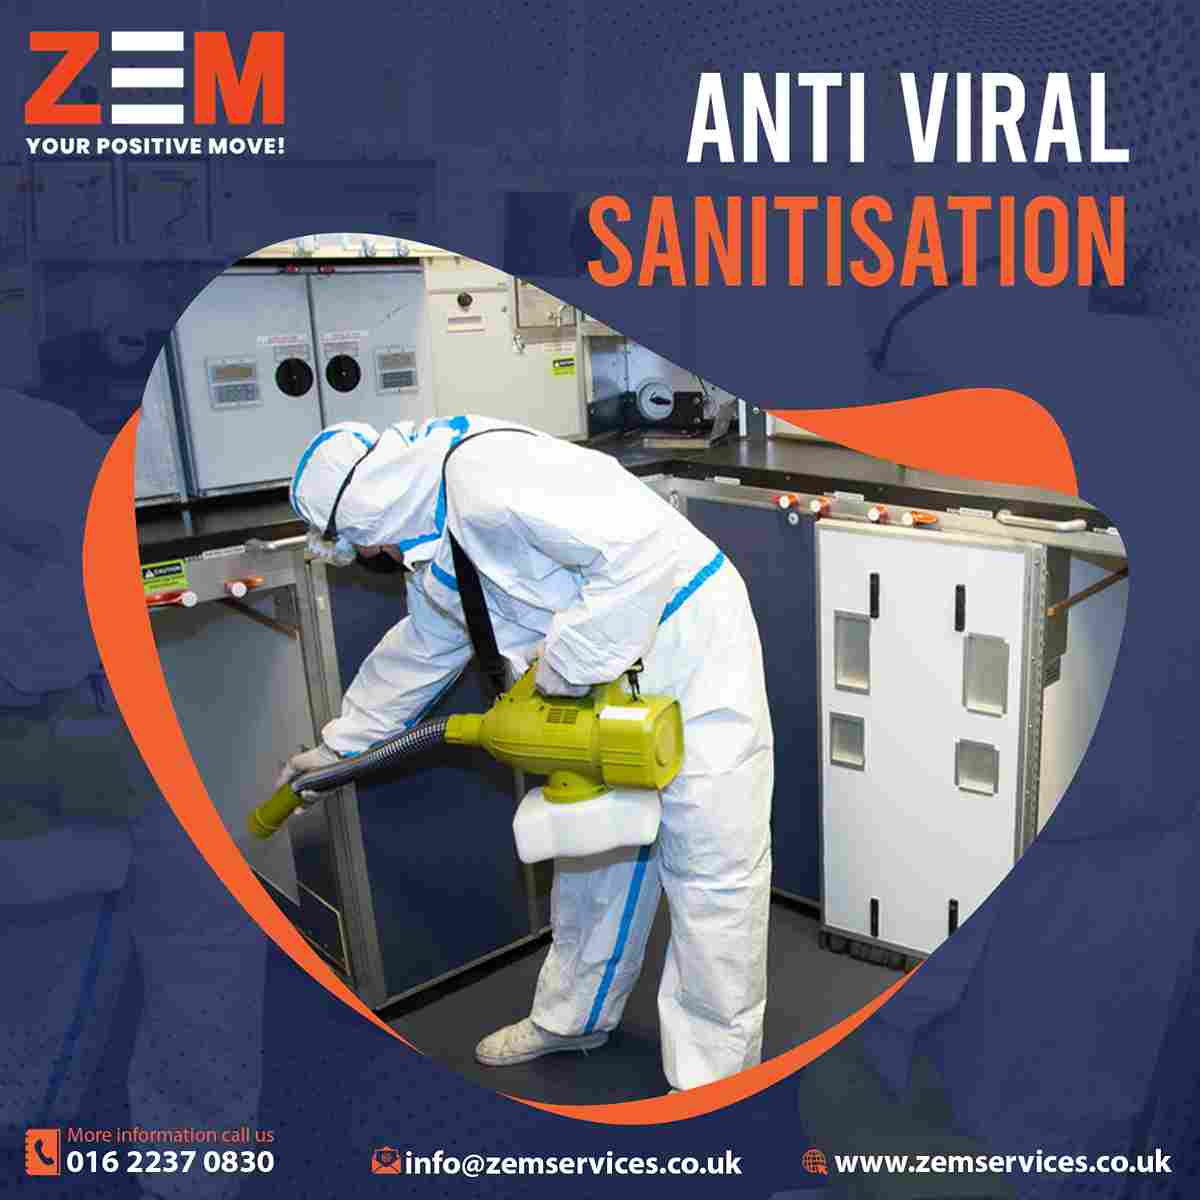 Zem Anti Viral Sanitisation